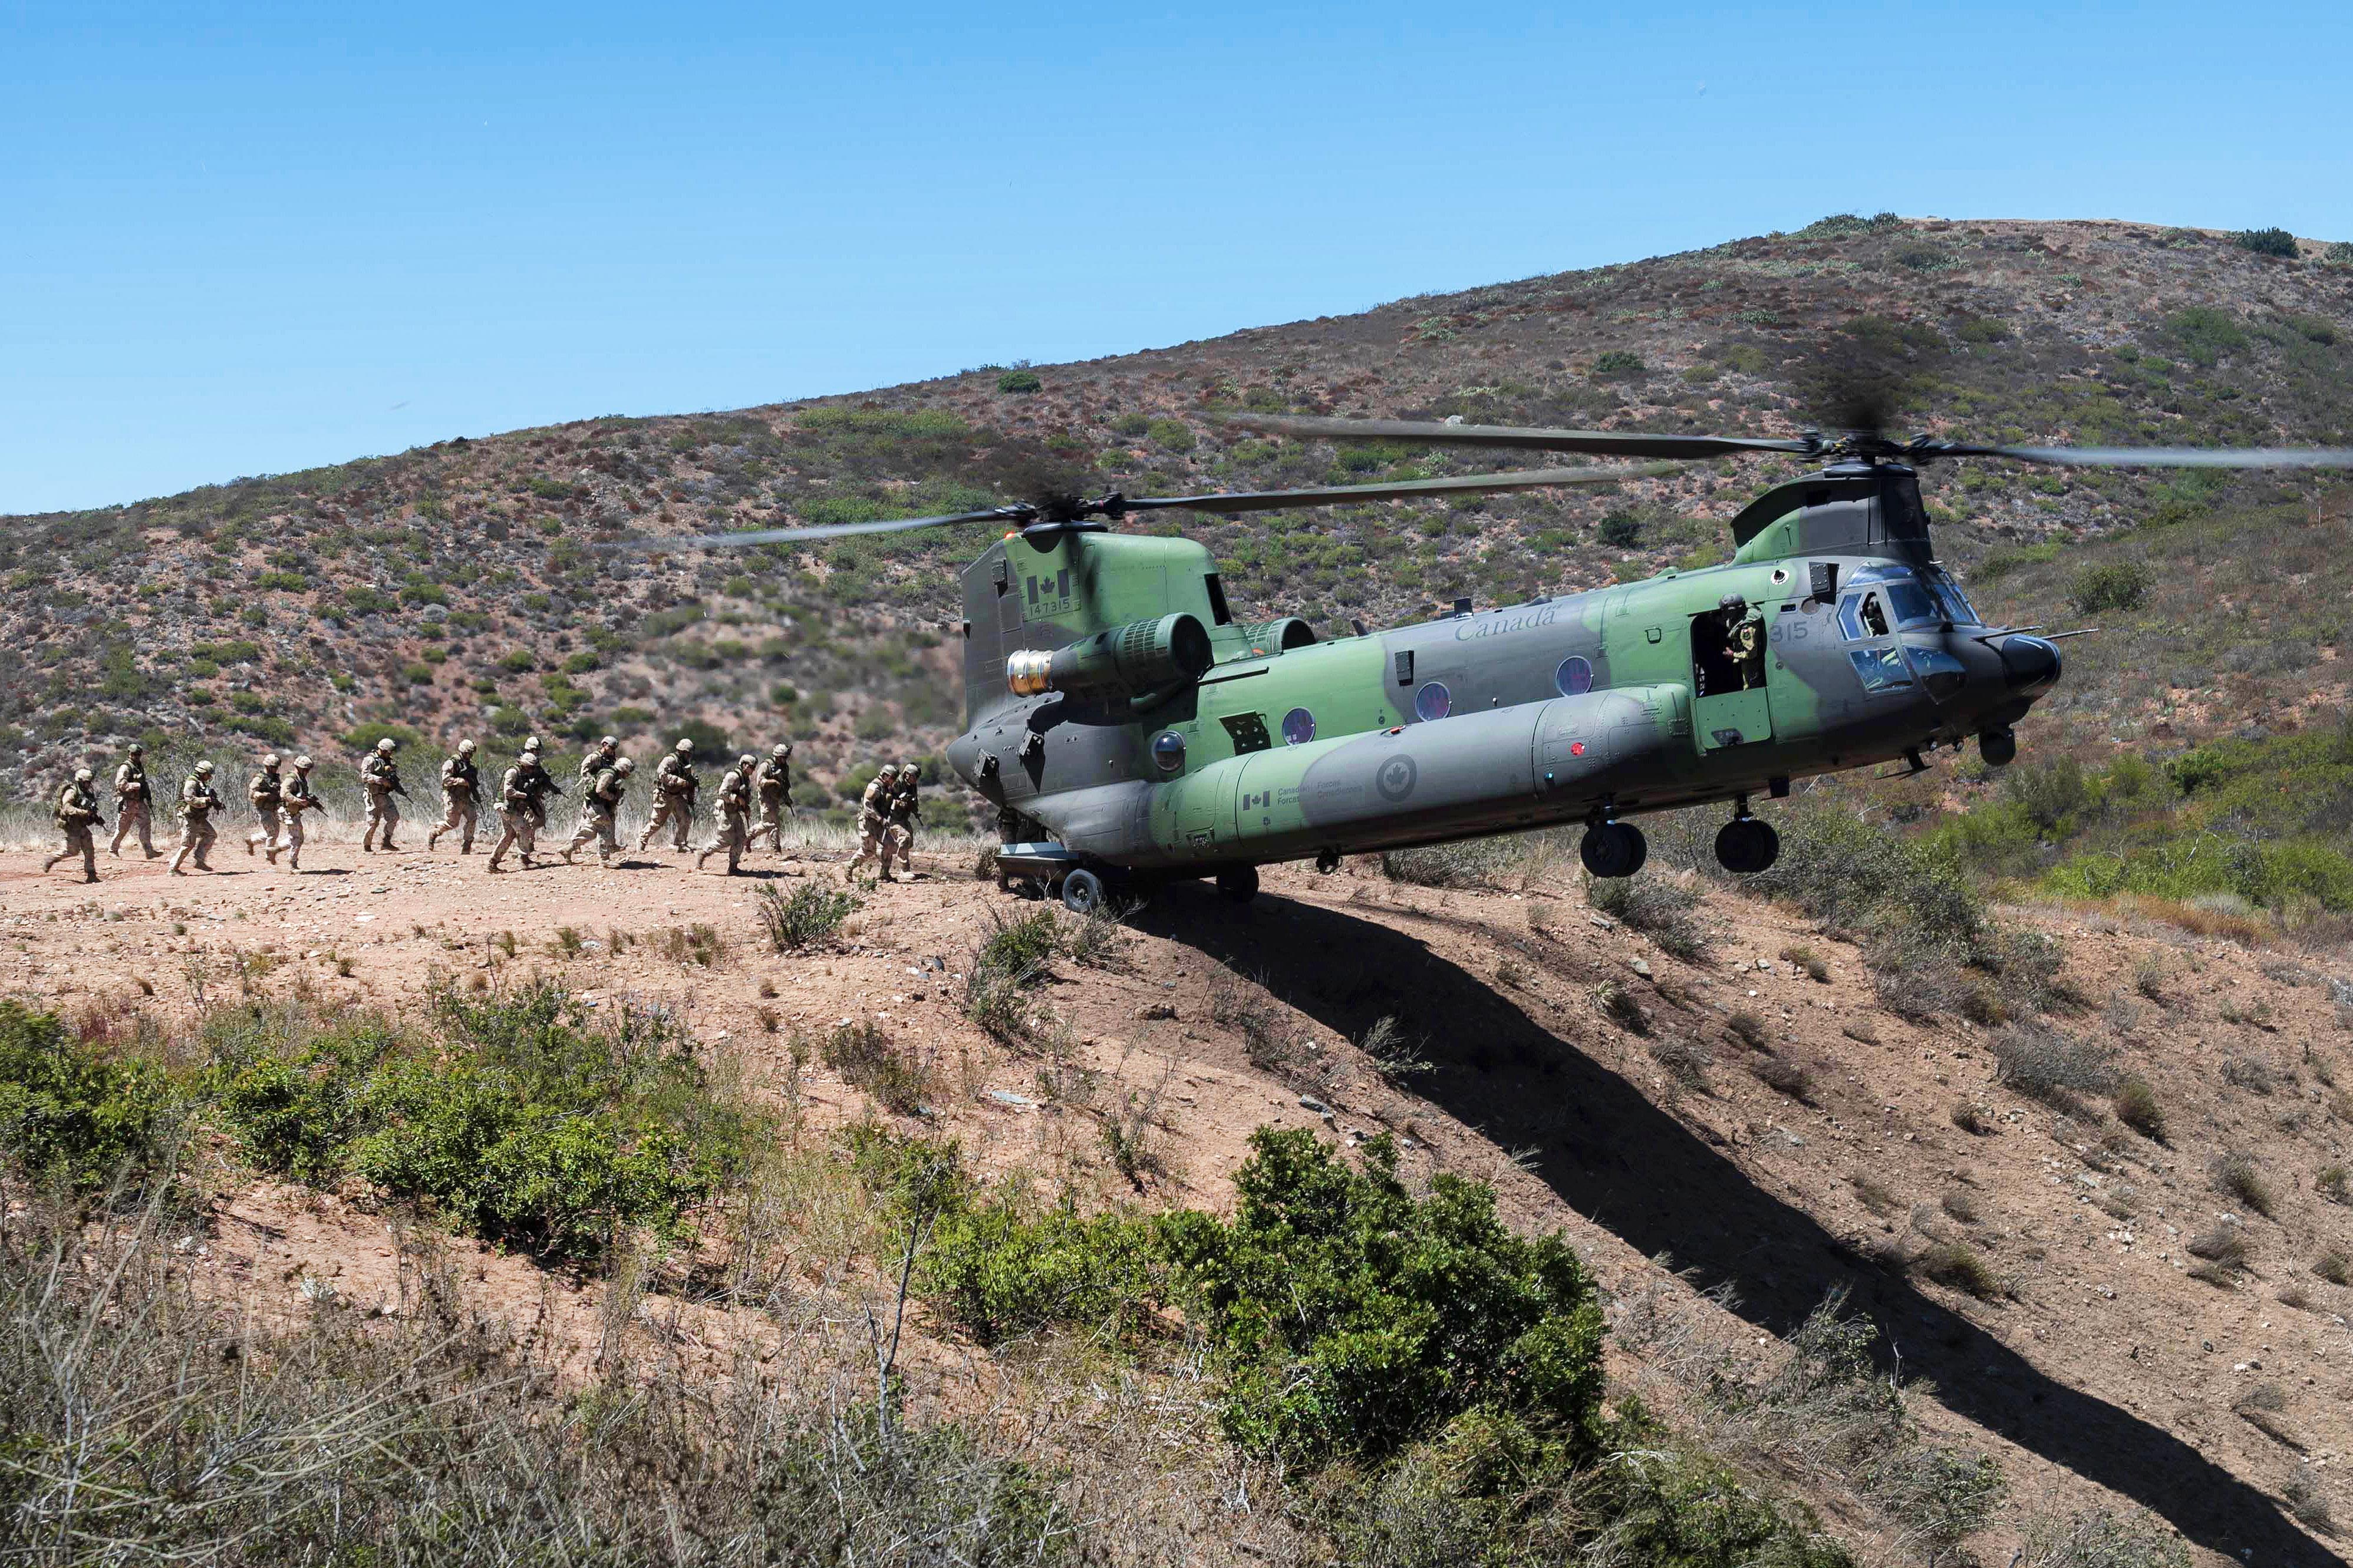 Погрузка-выгрузка балансирующего CH-147F Chinook ВВС Канады в рамках учения Rim of the Pacific 2016, фото сделано 15 июля 2016 года в районе базы Camp Pendleton, шт. Калифорния